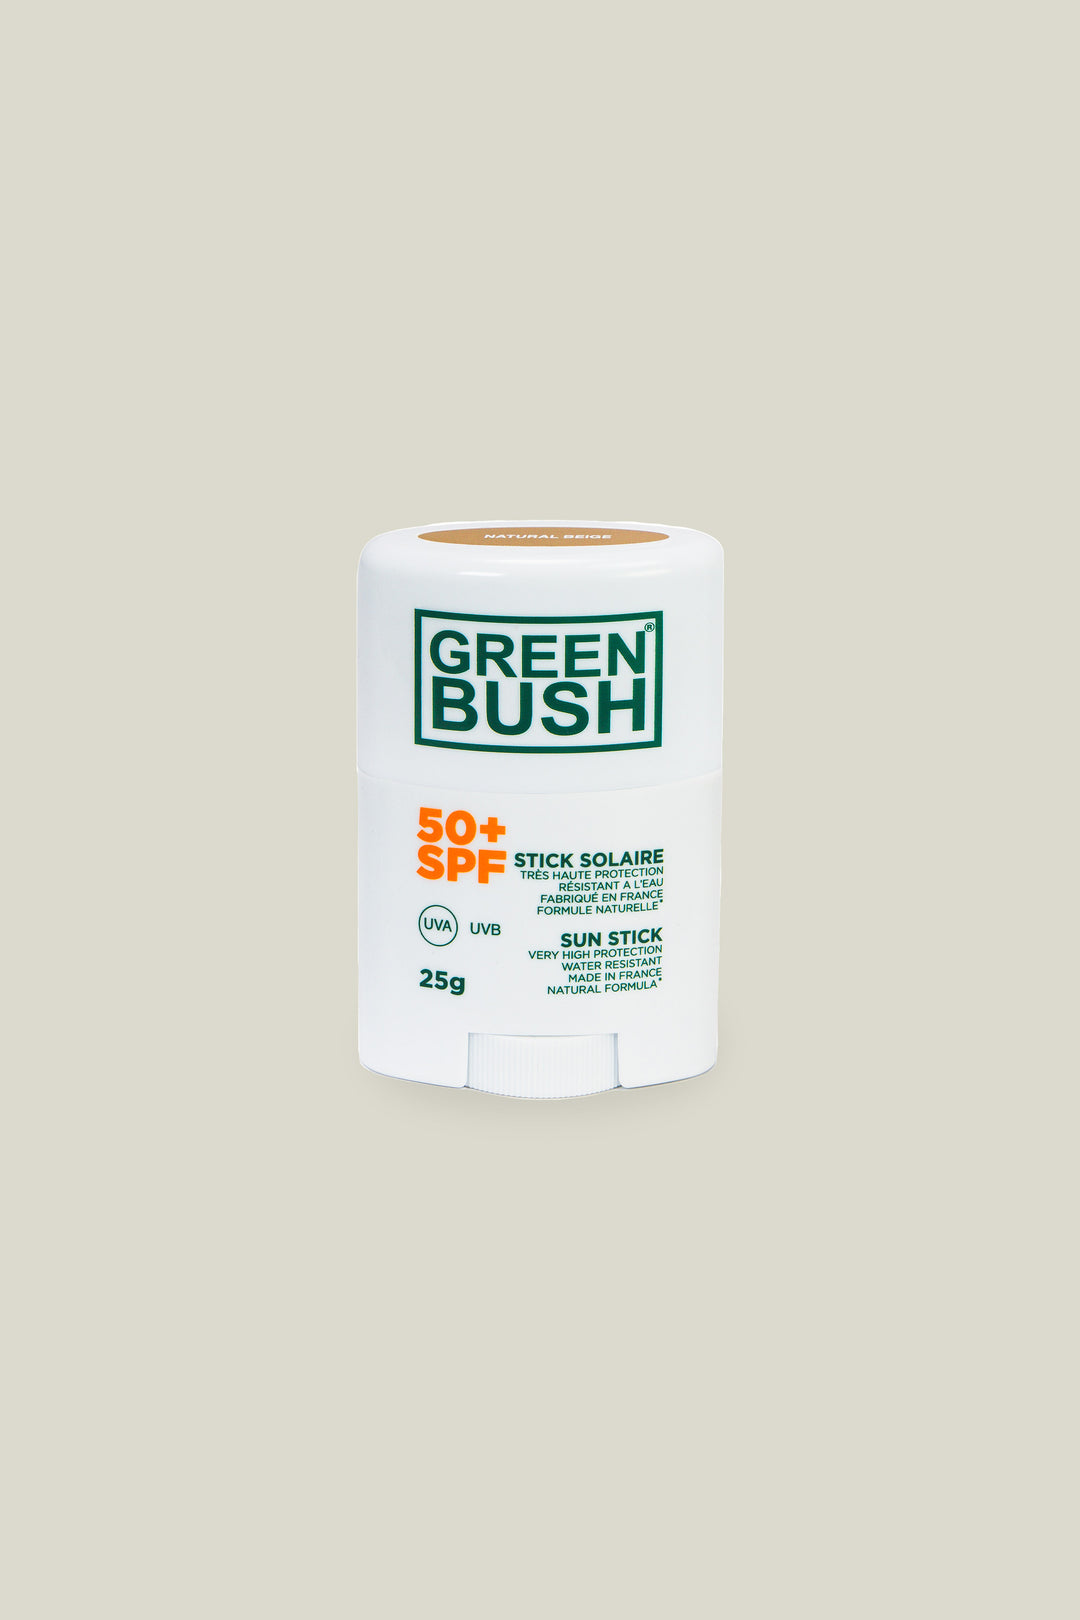 Stick solaire beige SPF50 - Greenbush - 25g